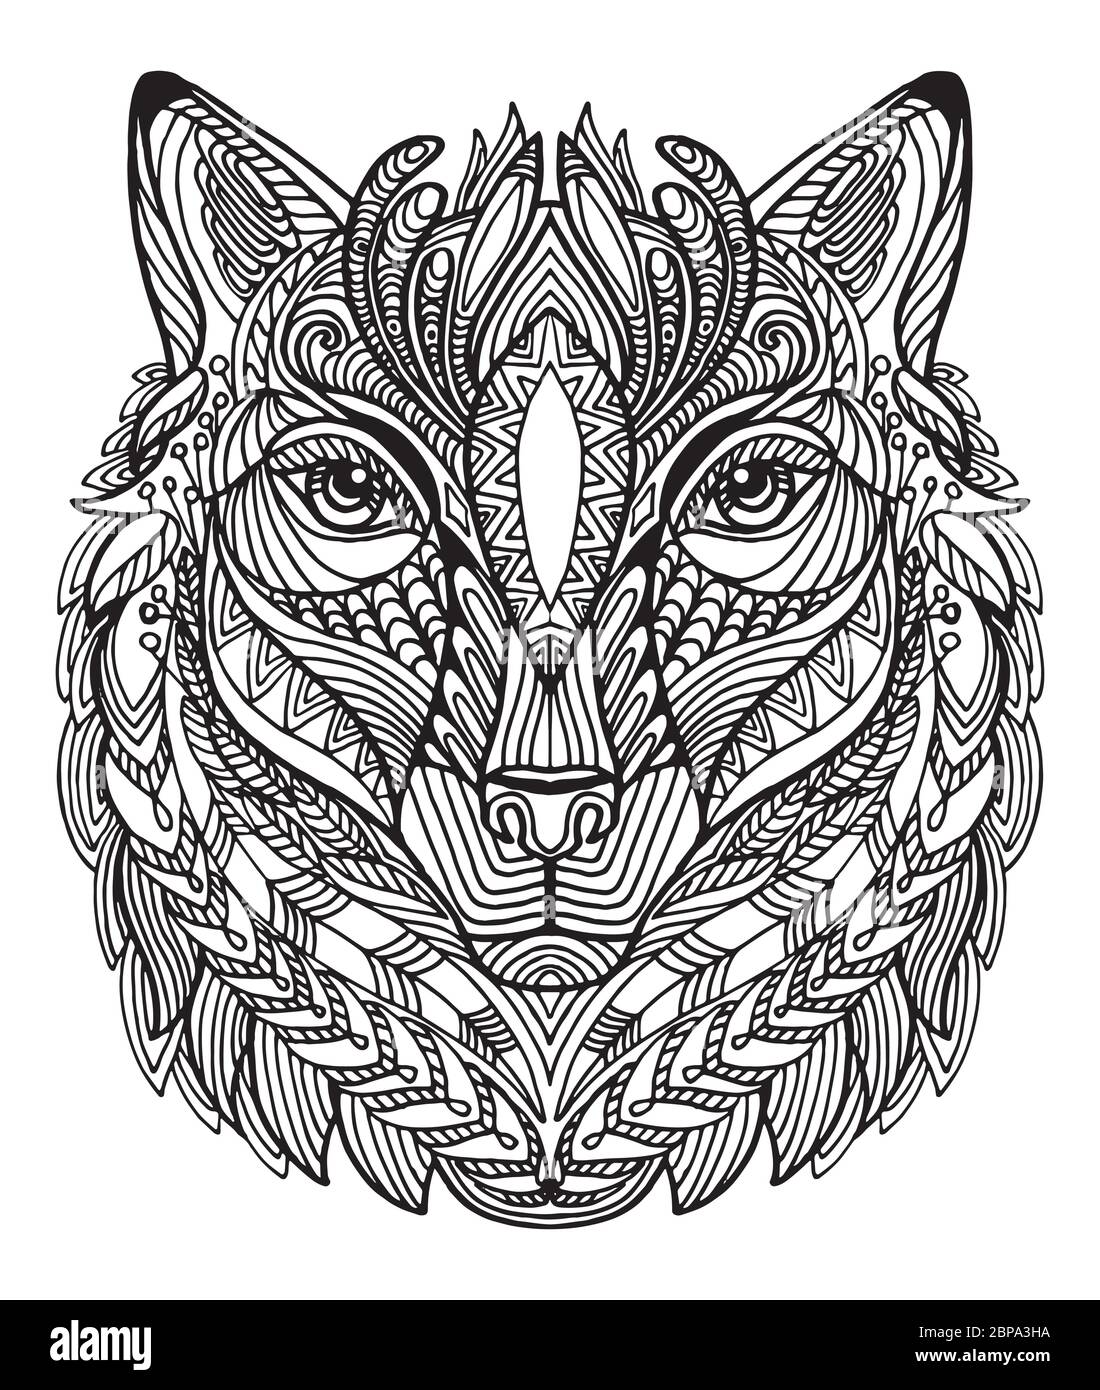 Vektor dekorativen Doodle ornamentalen Kopf des Wolfes. Abstrakte Vektor-Illustration von Wolf schwarze Kontur isoliert auf weißem Hintergrund. Abbildung des Lagerbestands Stock Vektor